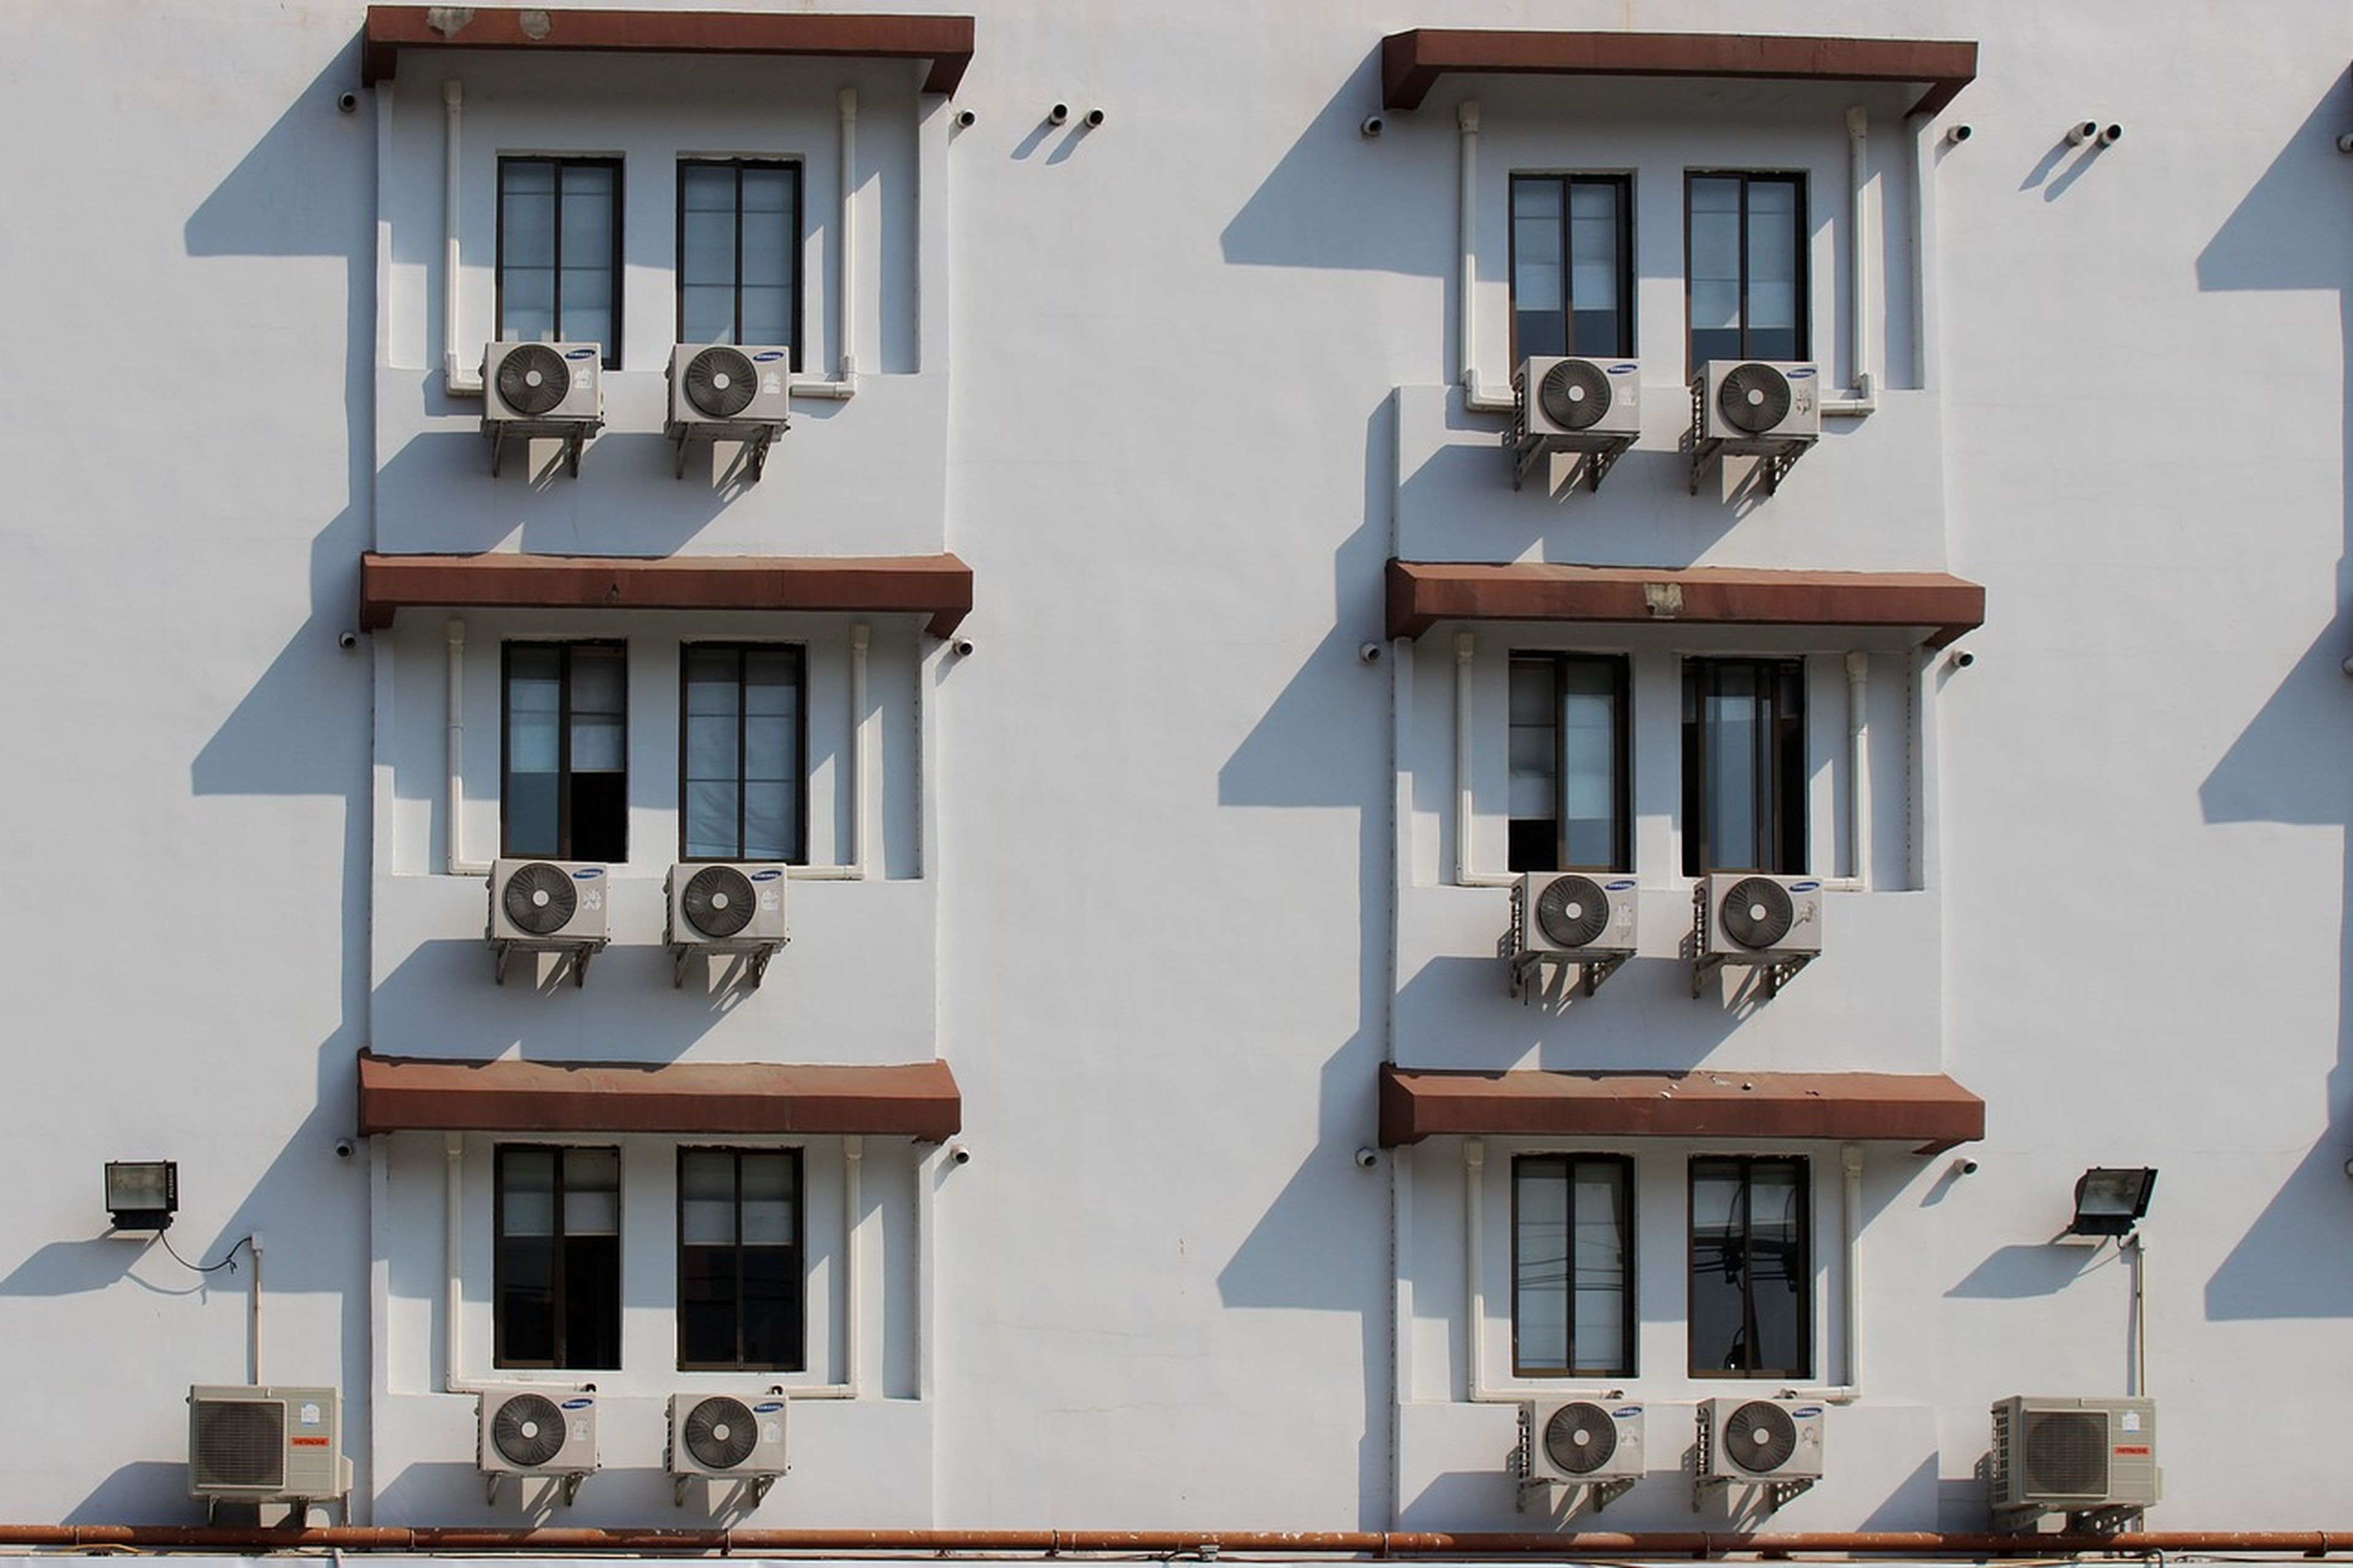 Aparatos de aire acondicionado en el exterior de un bloque de viviendas.